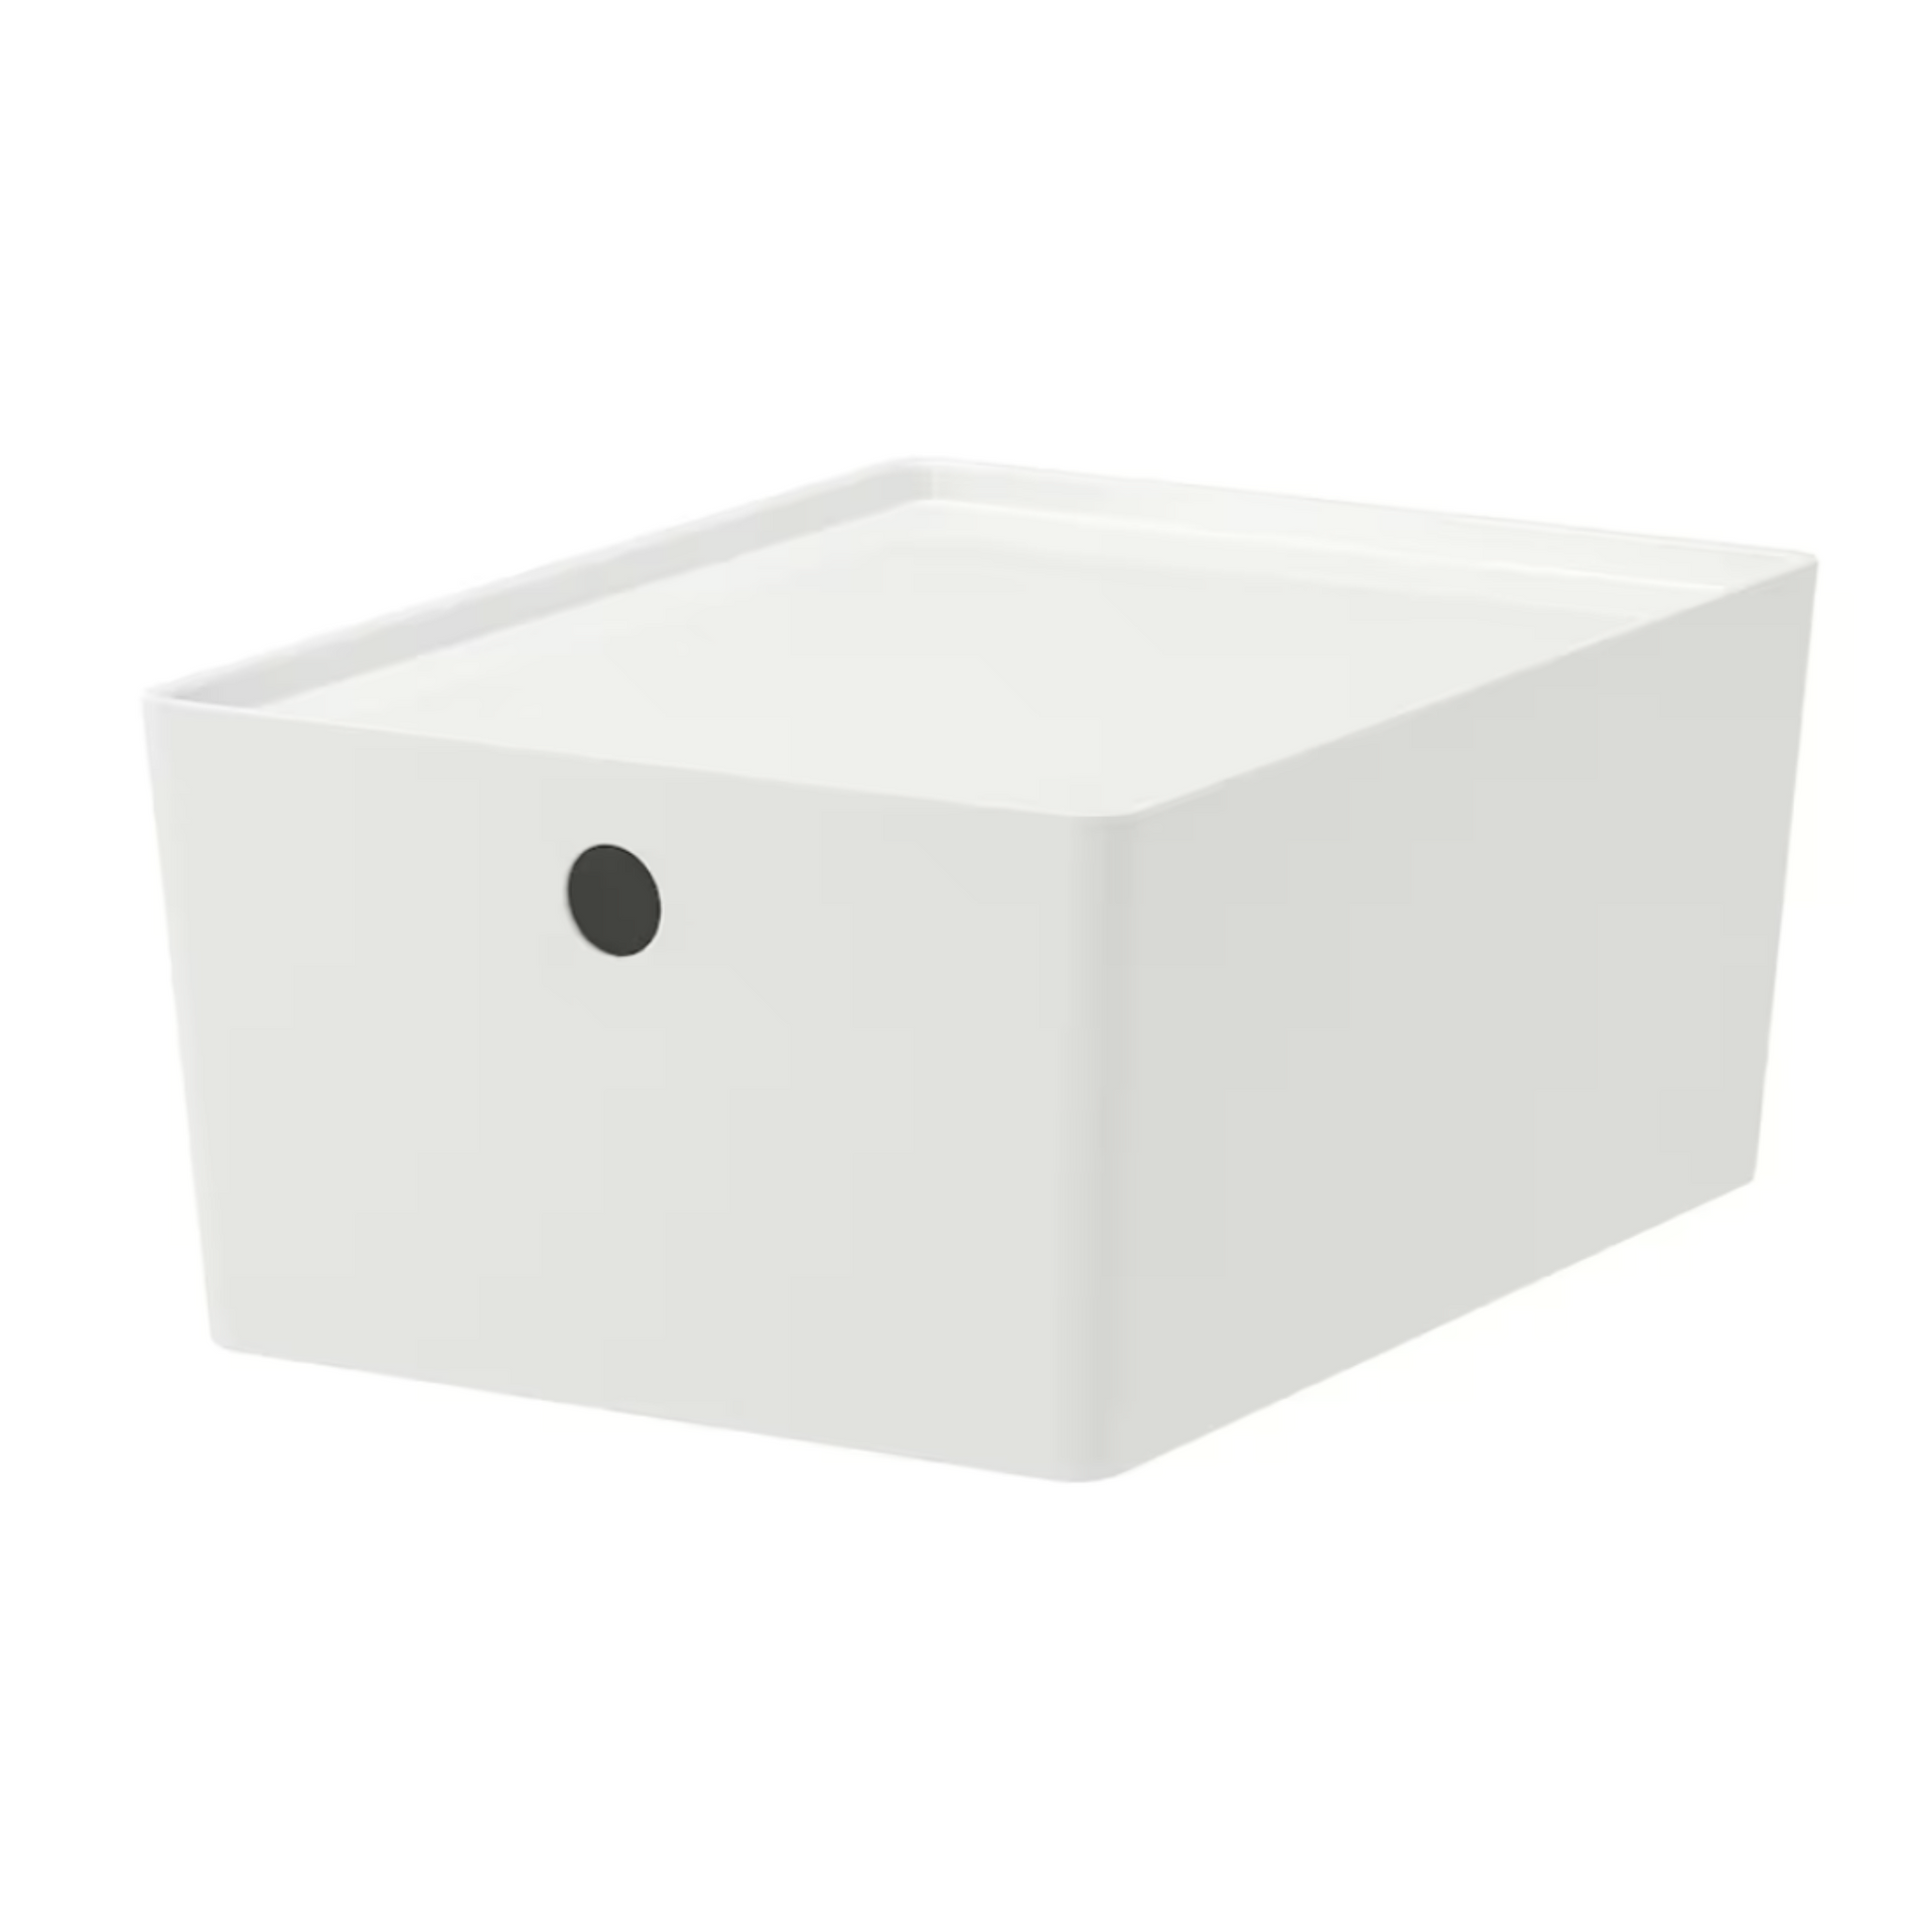 IKEA Kuggis Storage Box, Extra Large (6790572900417)